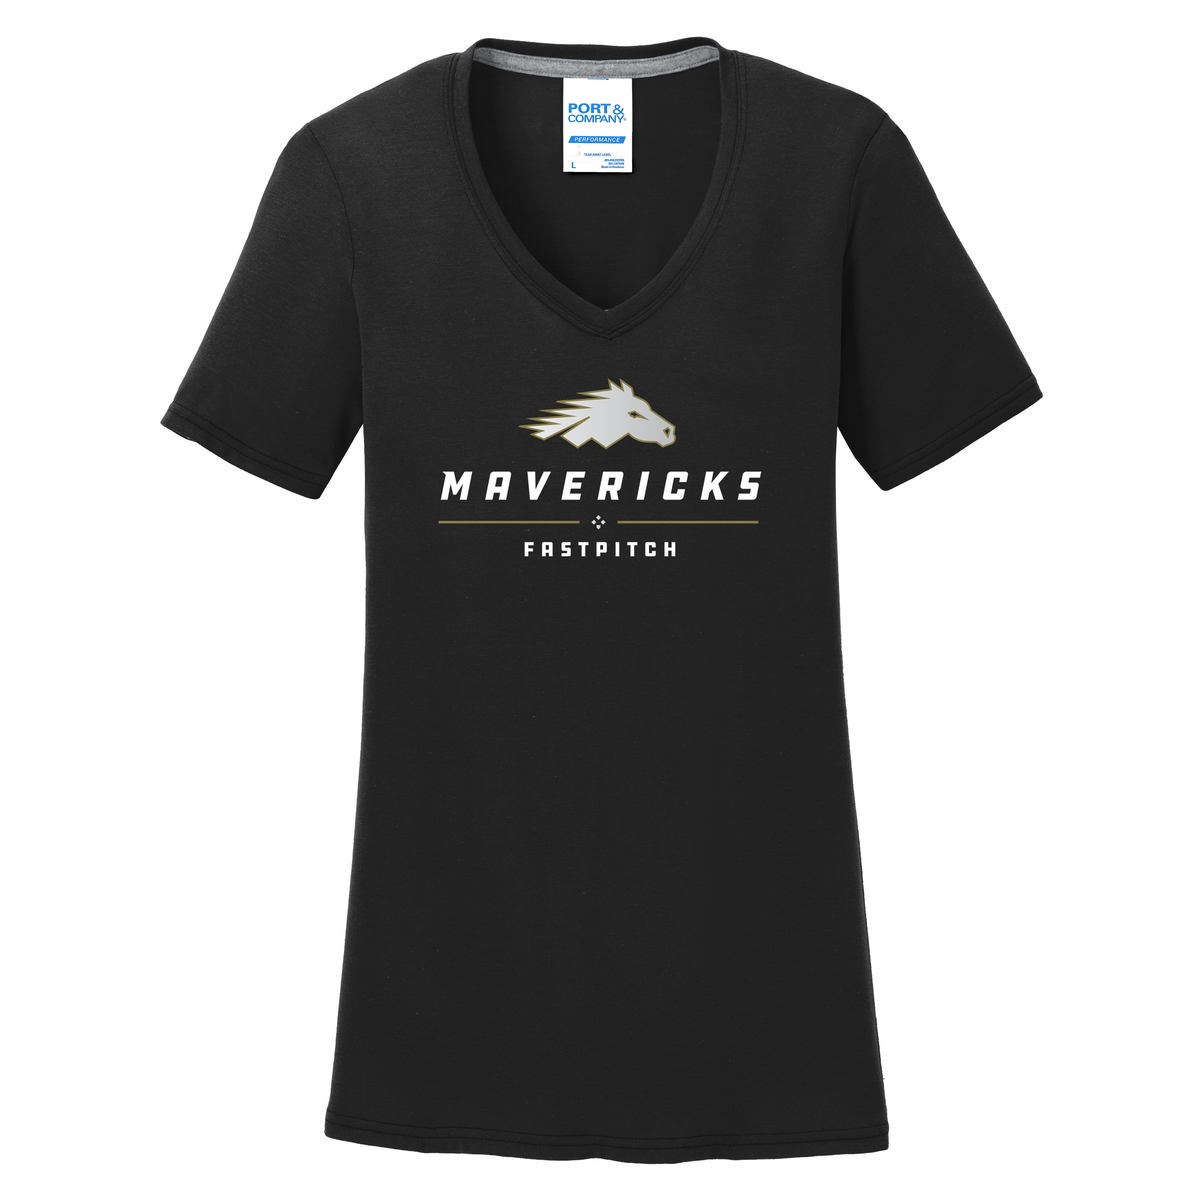 Mavs Fastpitch Women's T-Shirt